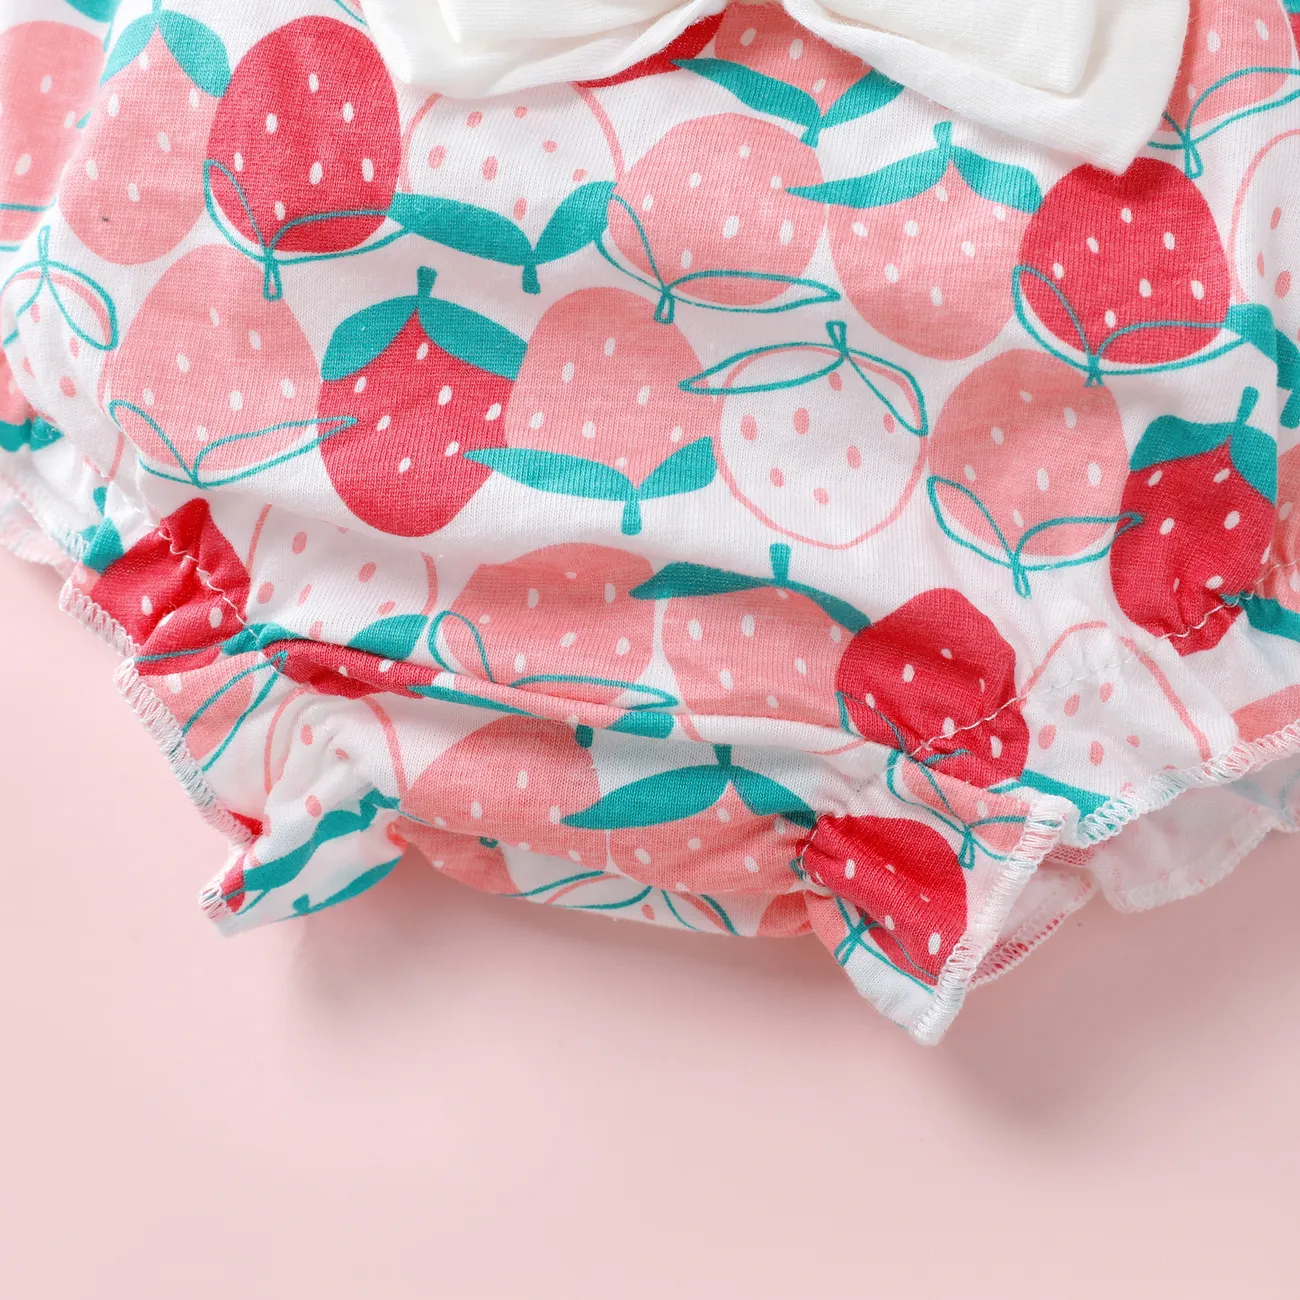 Kindliches Erdbeer-Unterwäsche-Set, 1-teilig, Baumwolle, für Kinder Mädchen Mehrfarben big image 1